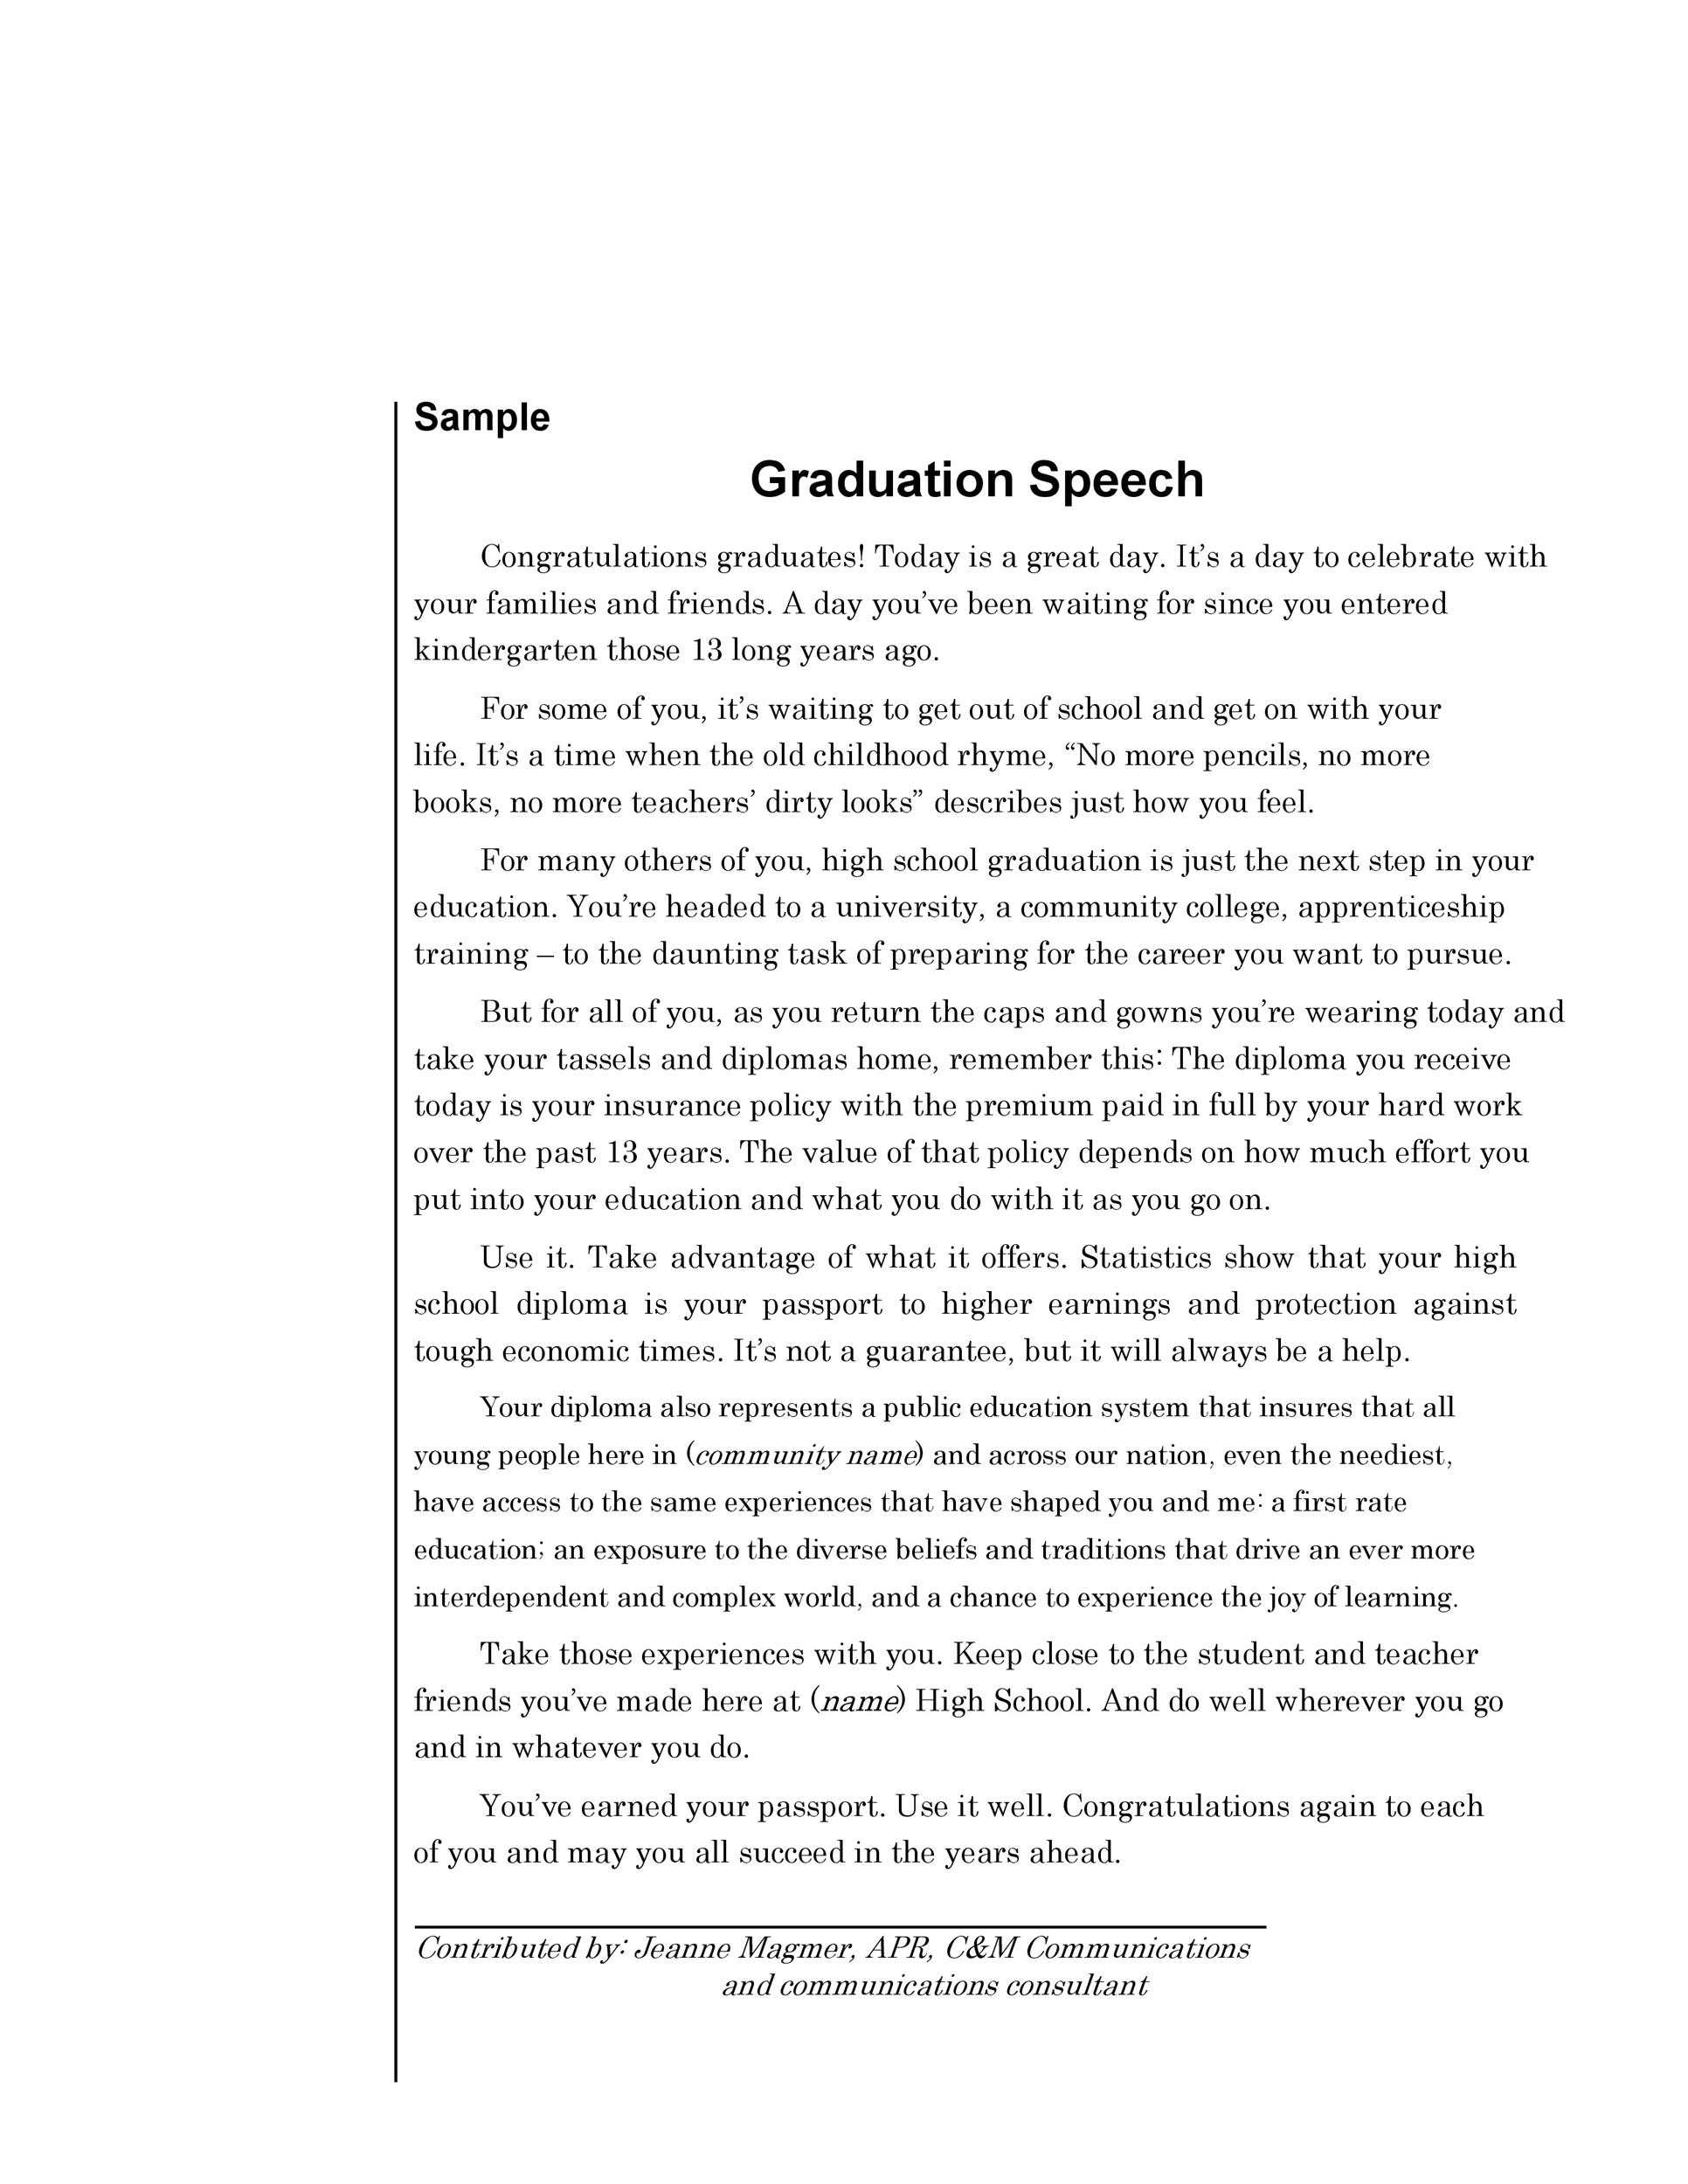 how to write a graduation speech as a teacher